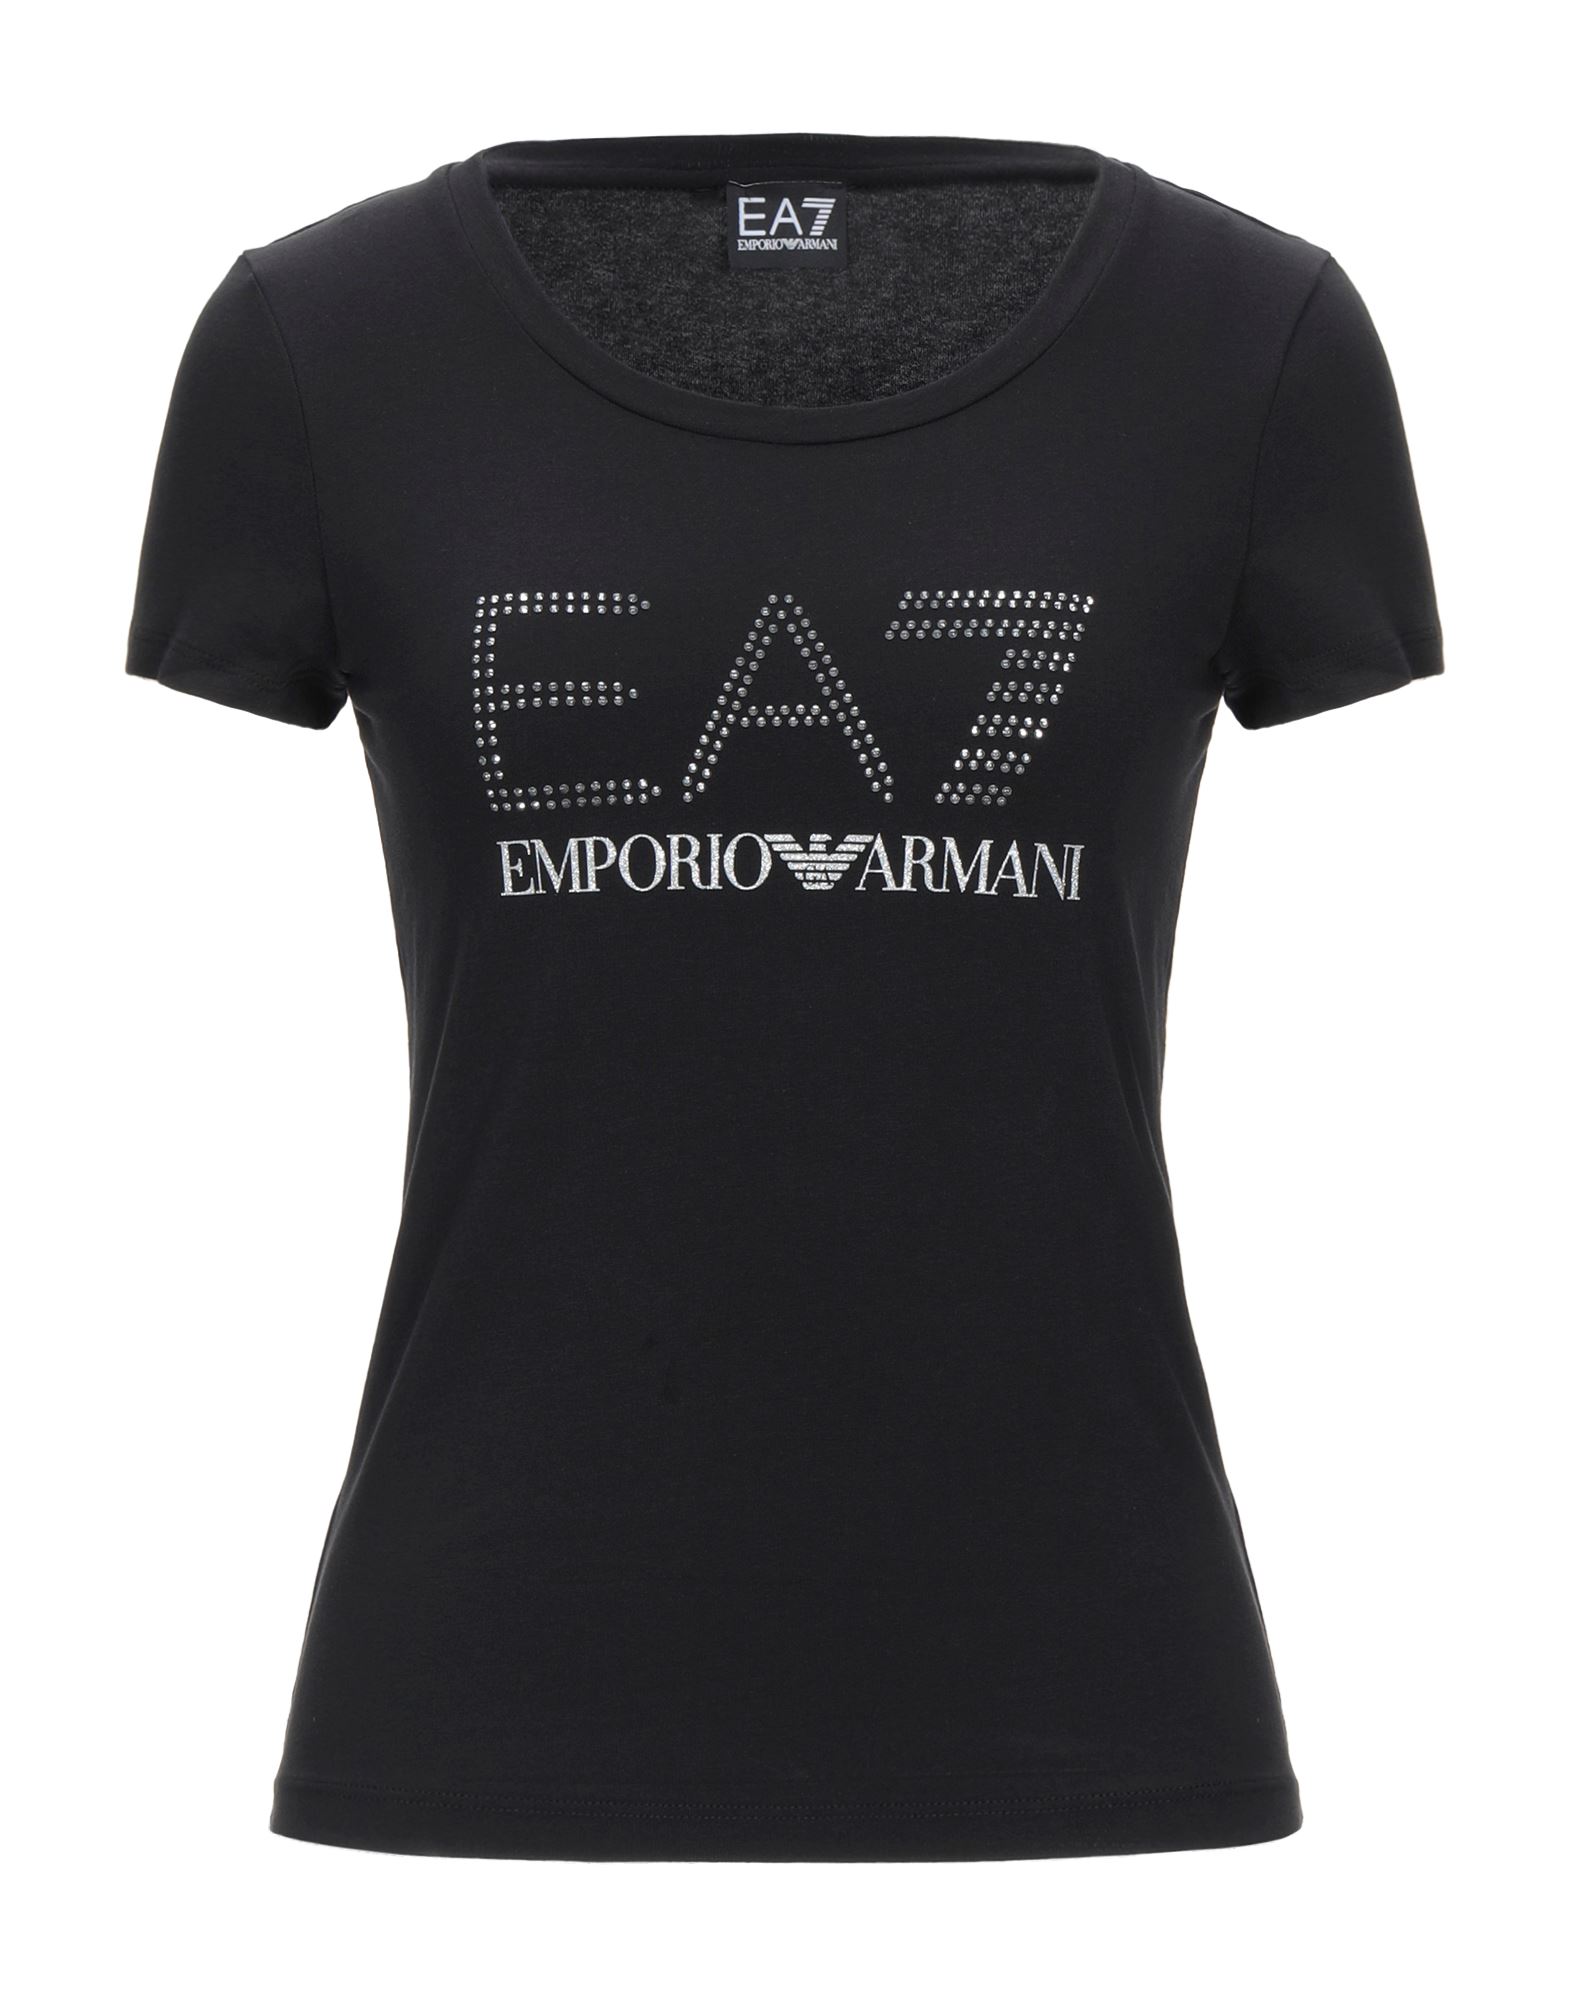 EA7 T-shirts - Item 12537665